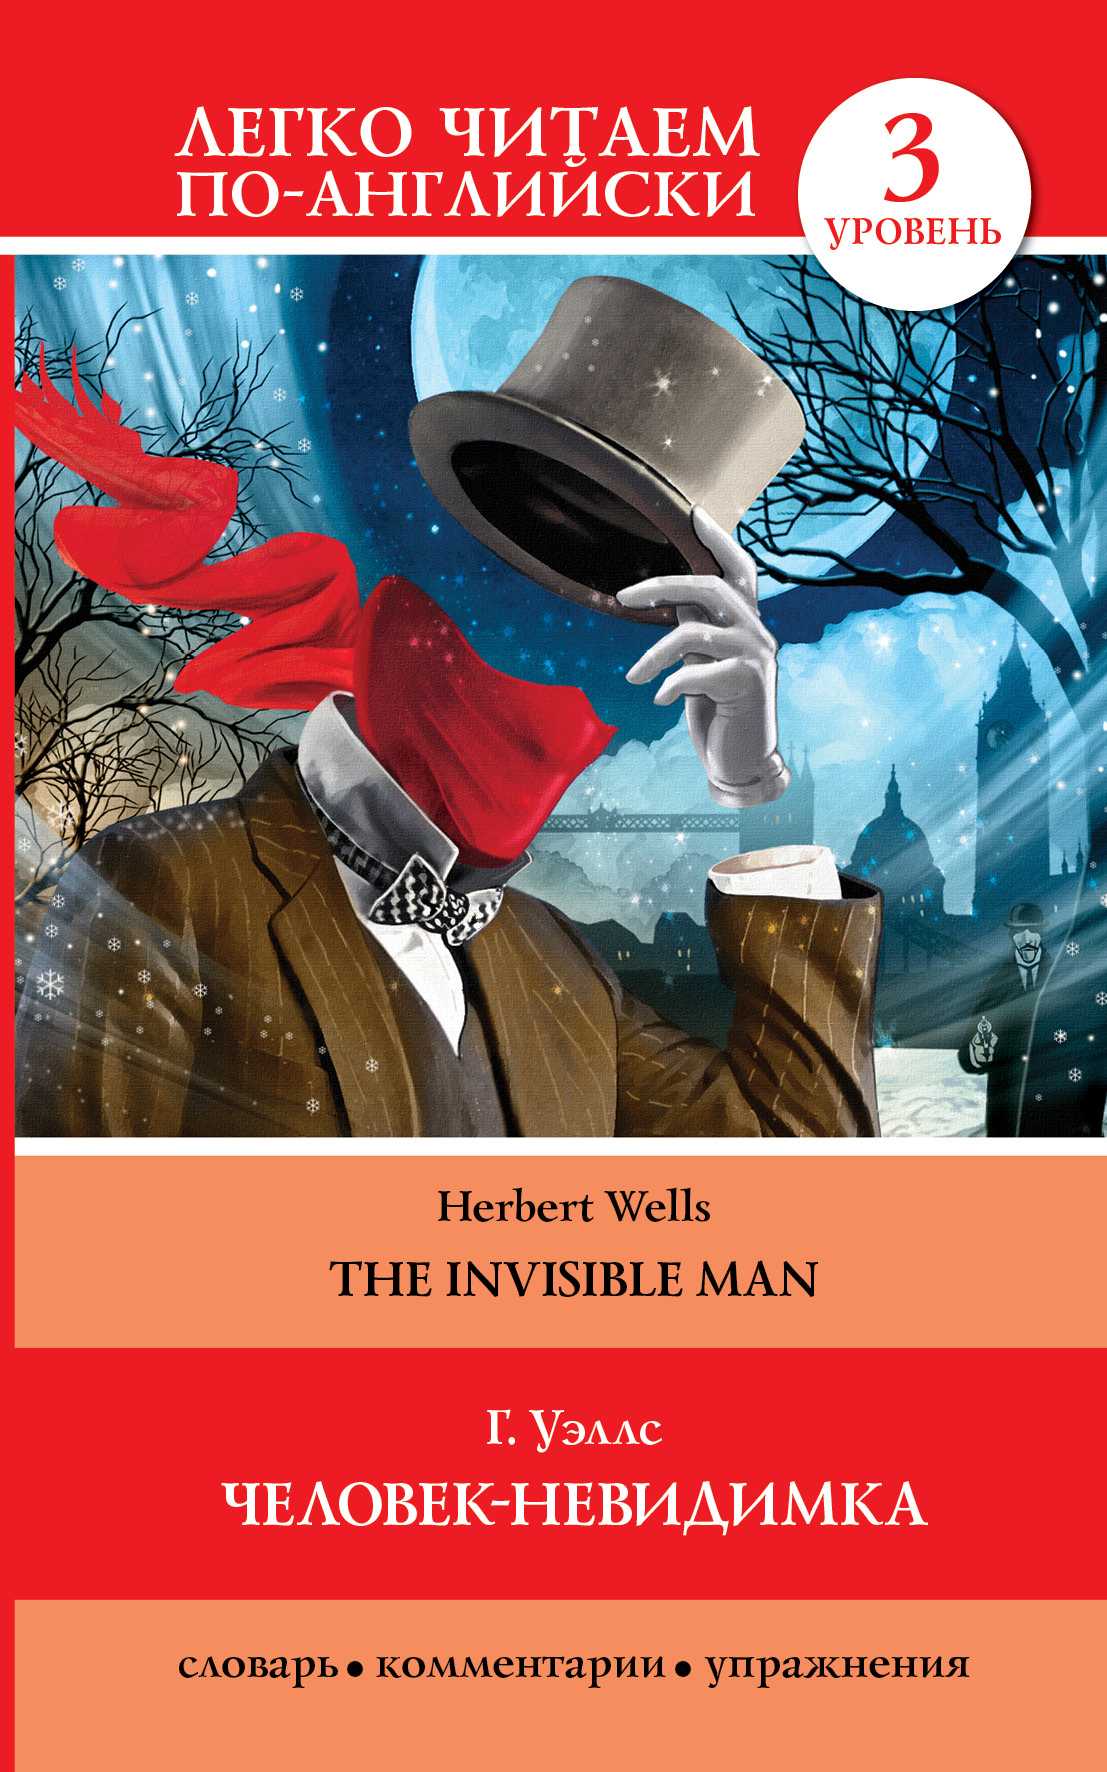 «человек-невидимка» — краткое содержание романа герберта уэллса